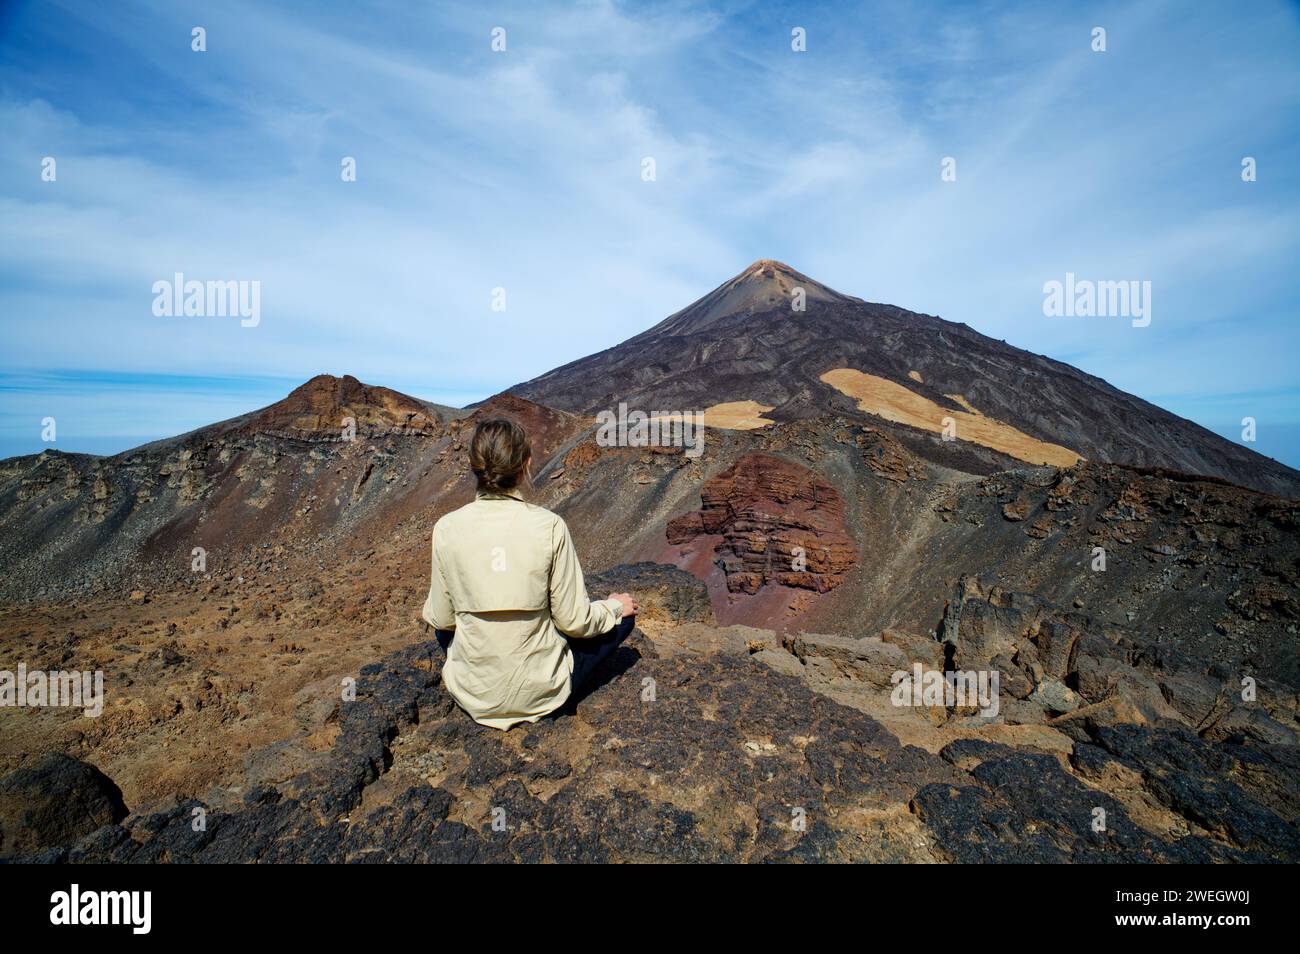 Une personne féminine assise à la montagne Pico Viejo regardant vers le mont Teide à Tenerife, îles Canaries, Espagne. Destinations célèbres pour les randonneurs. Banque D'Images